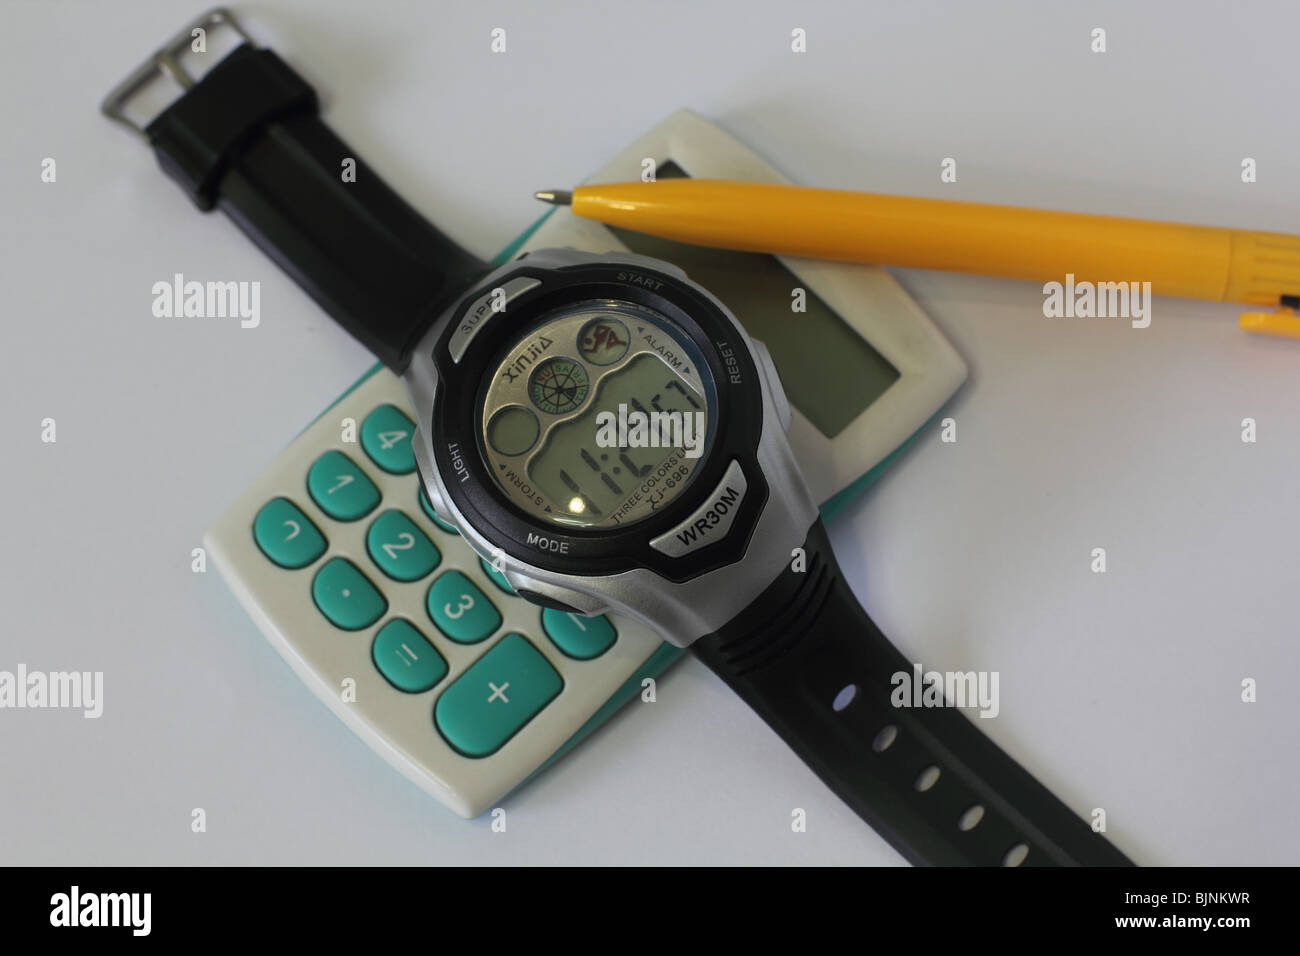 billige Kunststoff asiatischen Digitaluhr mit Taschenrechner und  Kugelschreiber Stockfotografie - Alamy